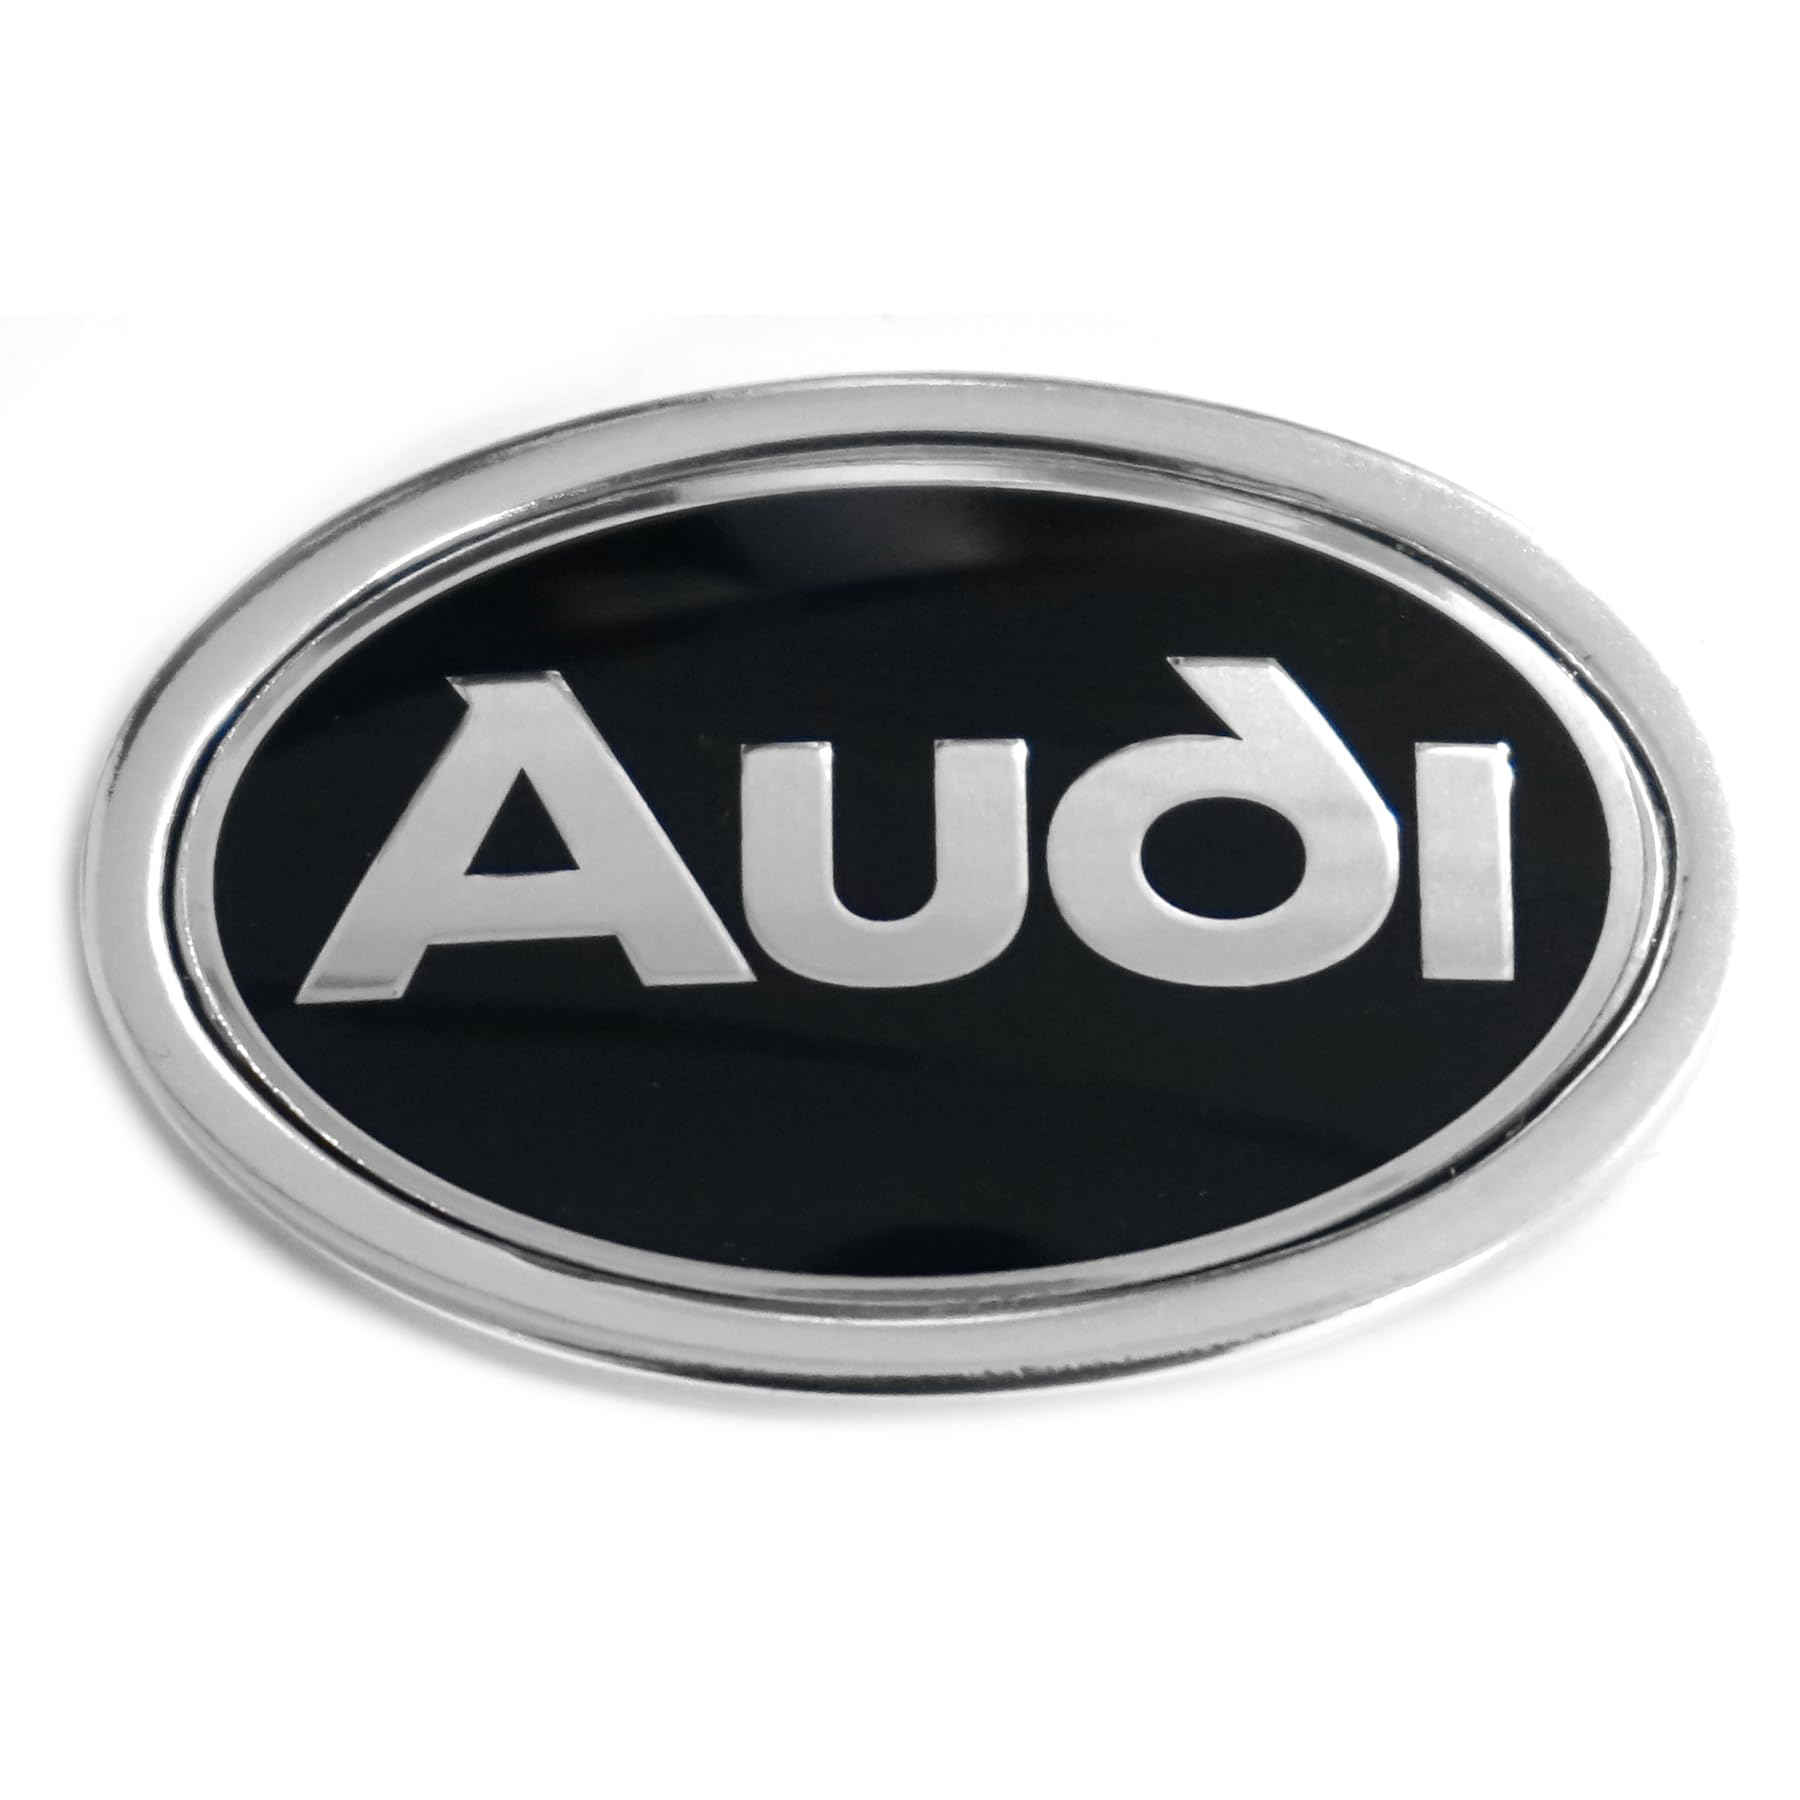 Audi 895853621A01C Plakette Logo Emblem Kotflügel, schwarz/Chrom von Audi